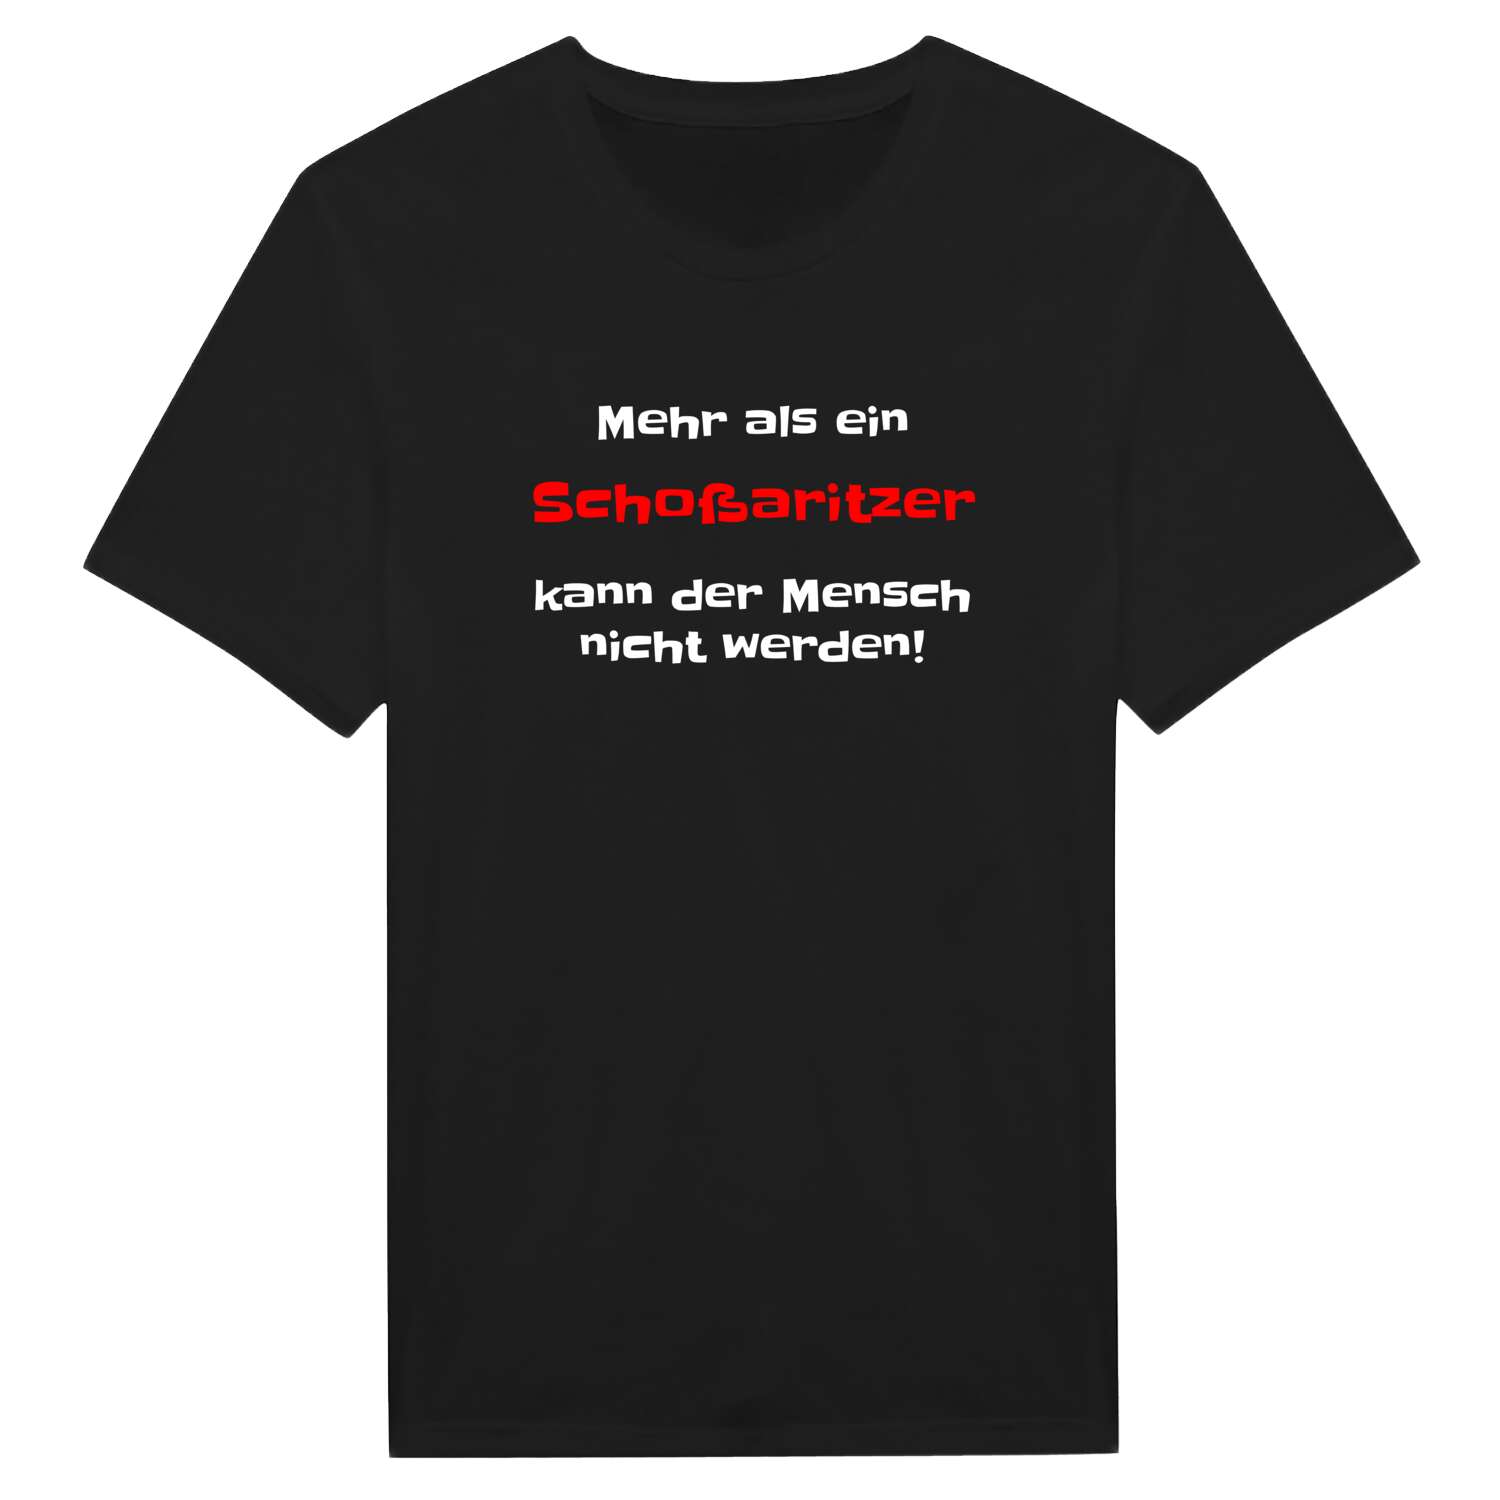 Schoßaritz T-Shirt »Mehr als ein«